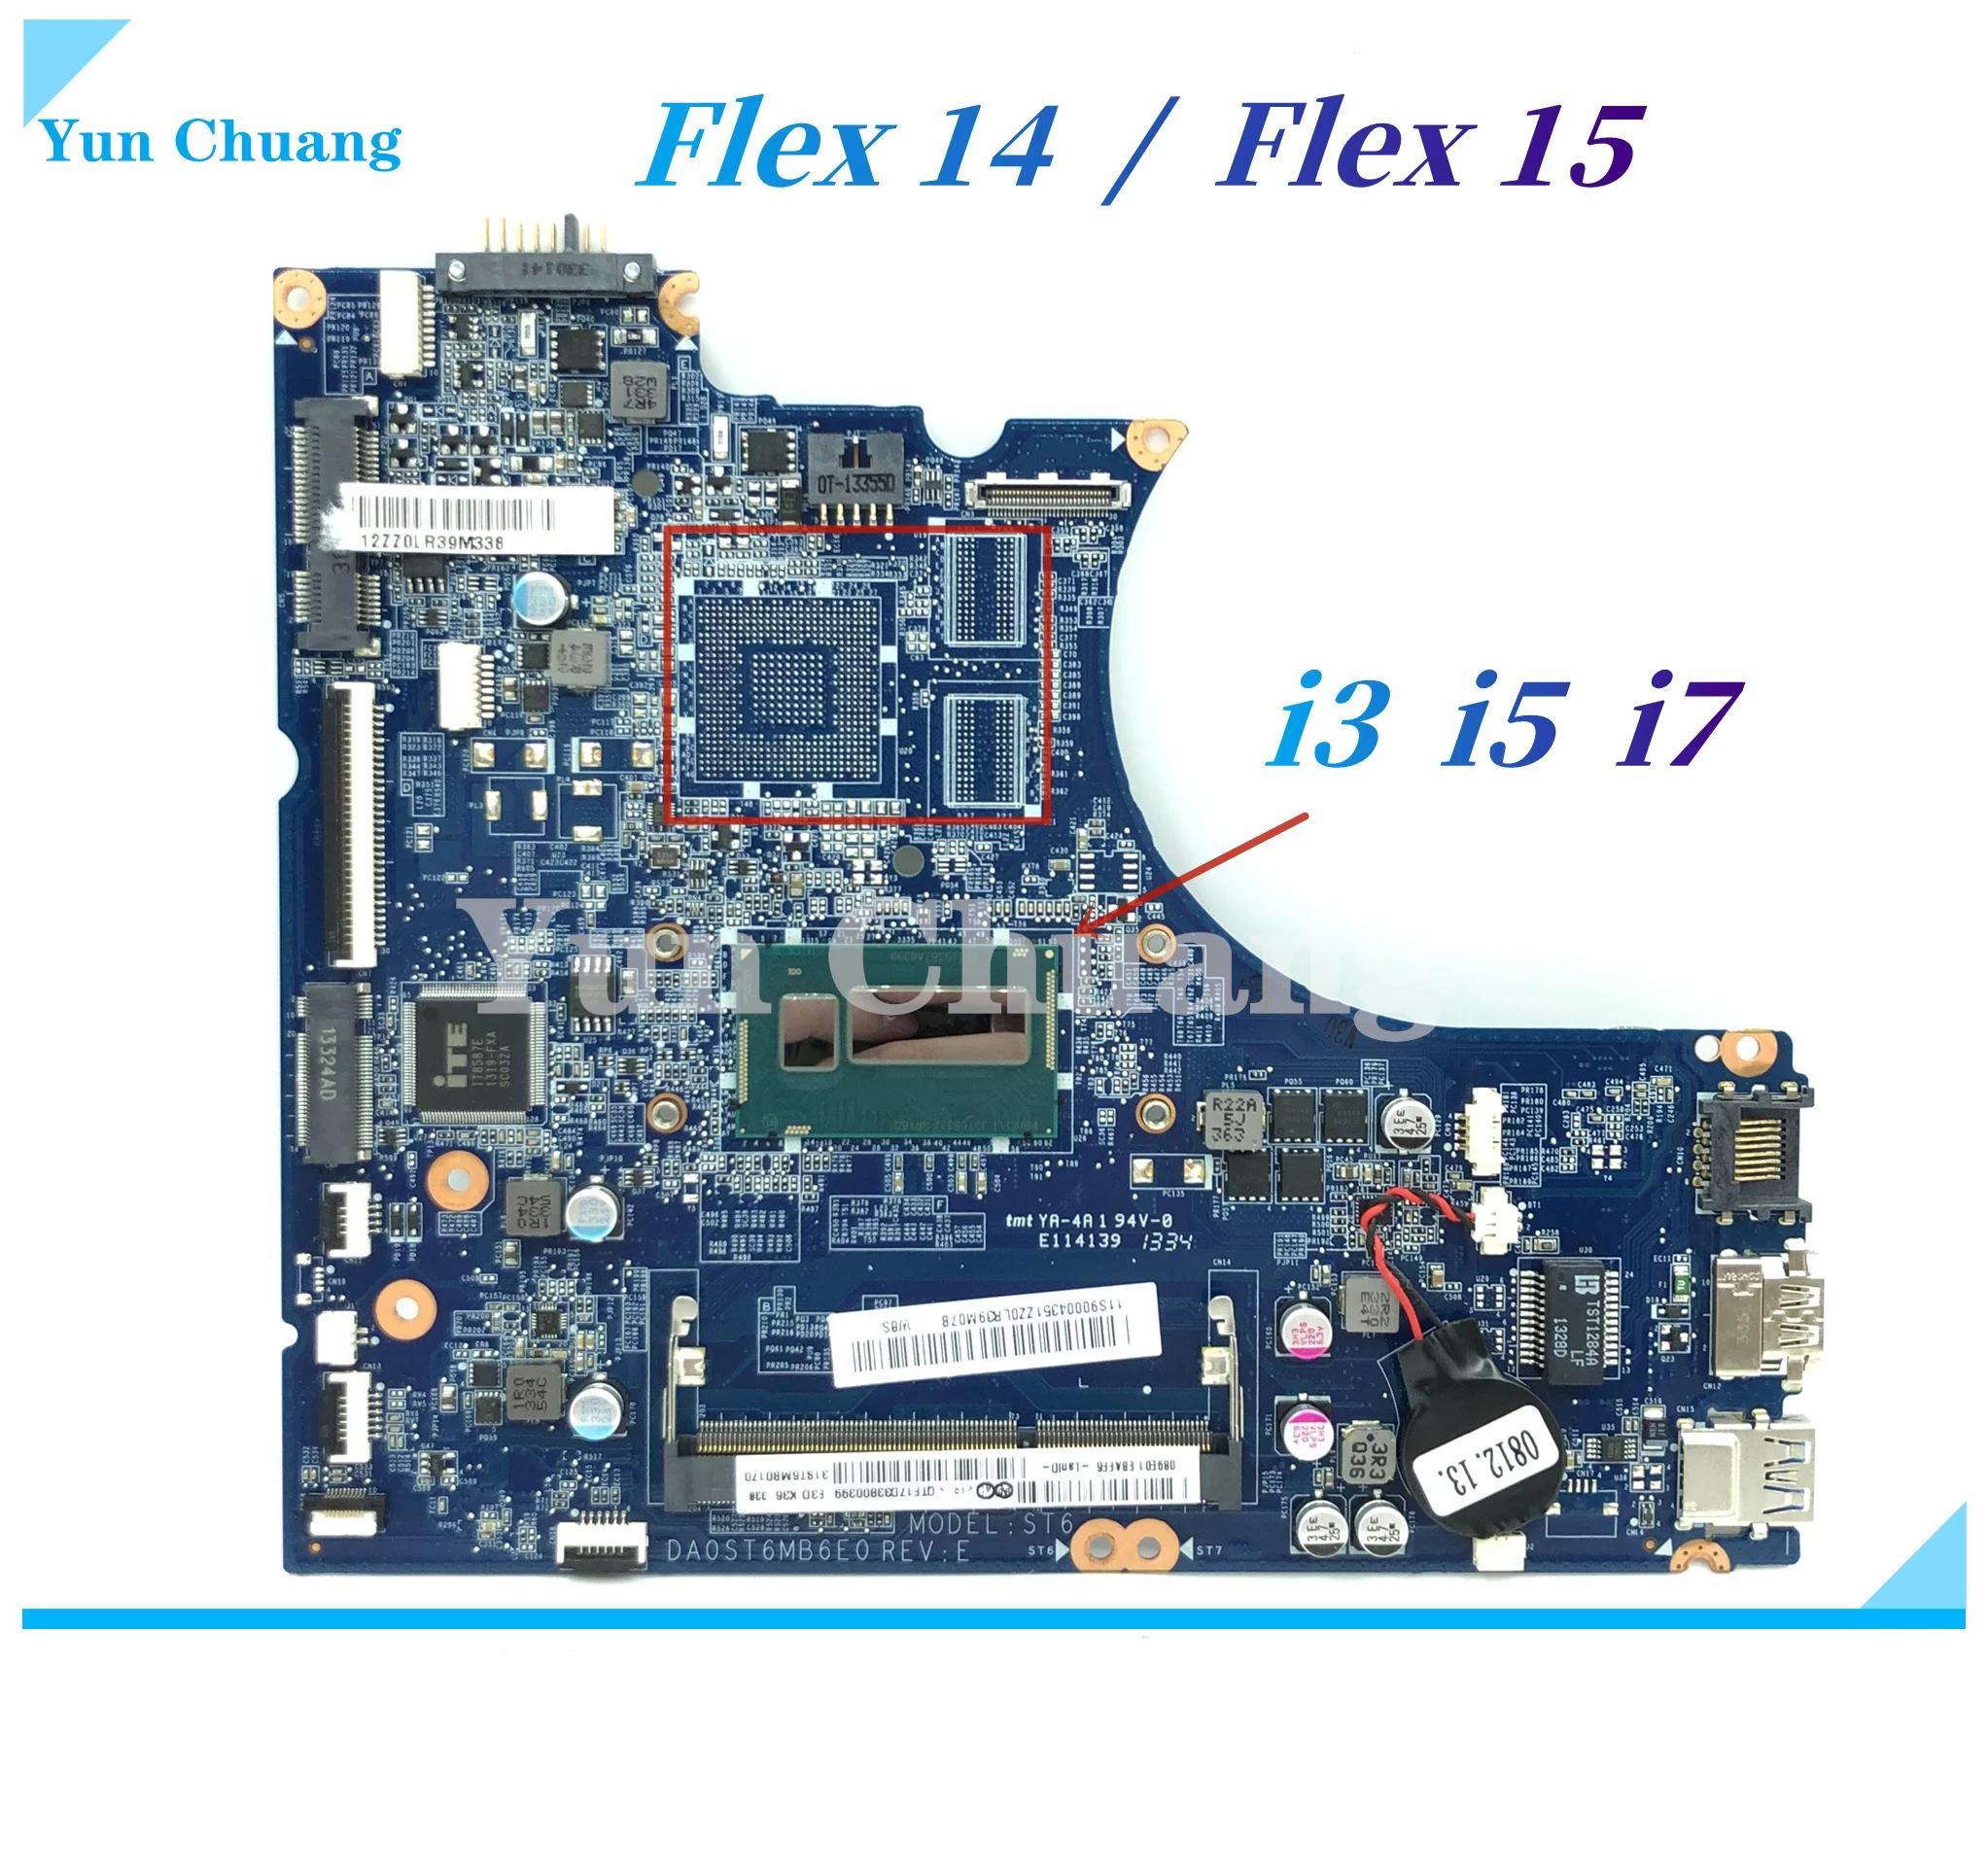  Ideapad Flex 14 Flex 15 Ʈ , DA0ST6MB6E0 DA0ST6MB6F0, i3-4010U i5-4200U i7-4500U CPU UMA 